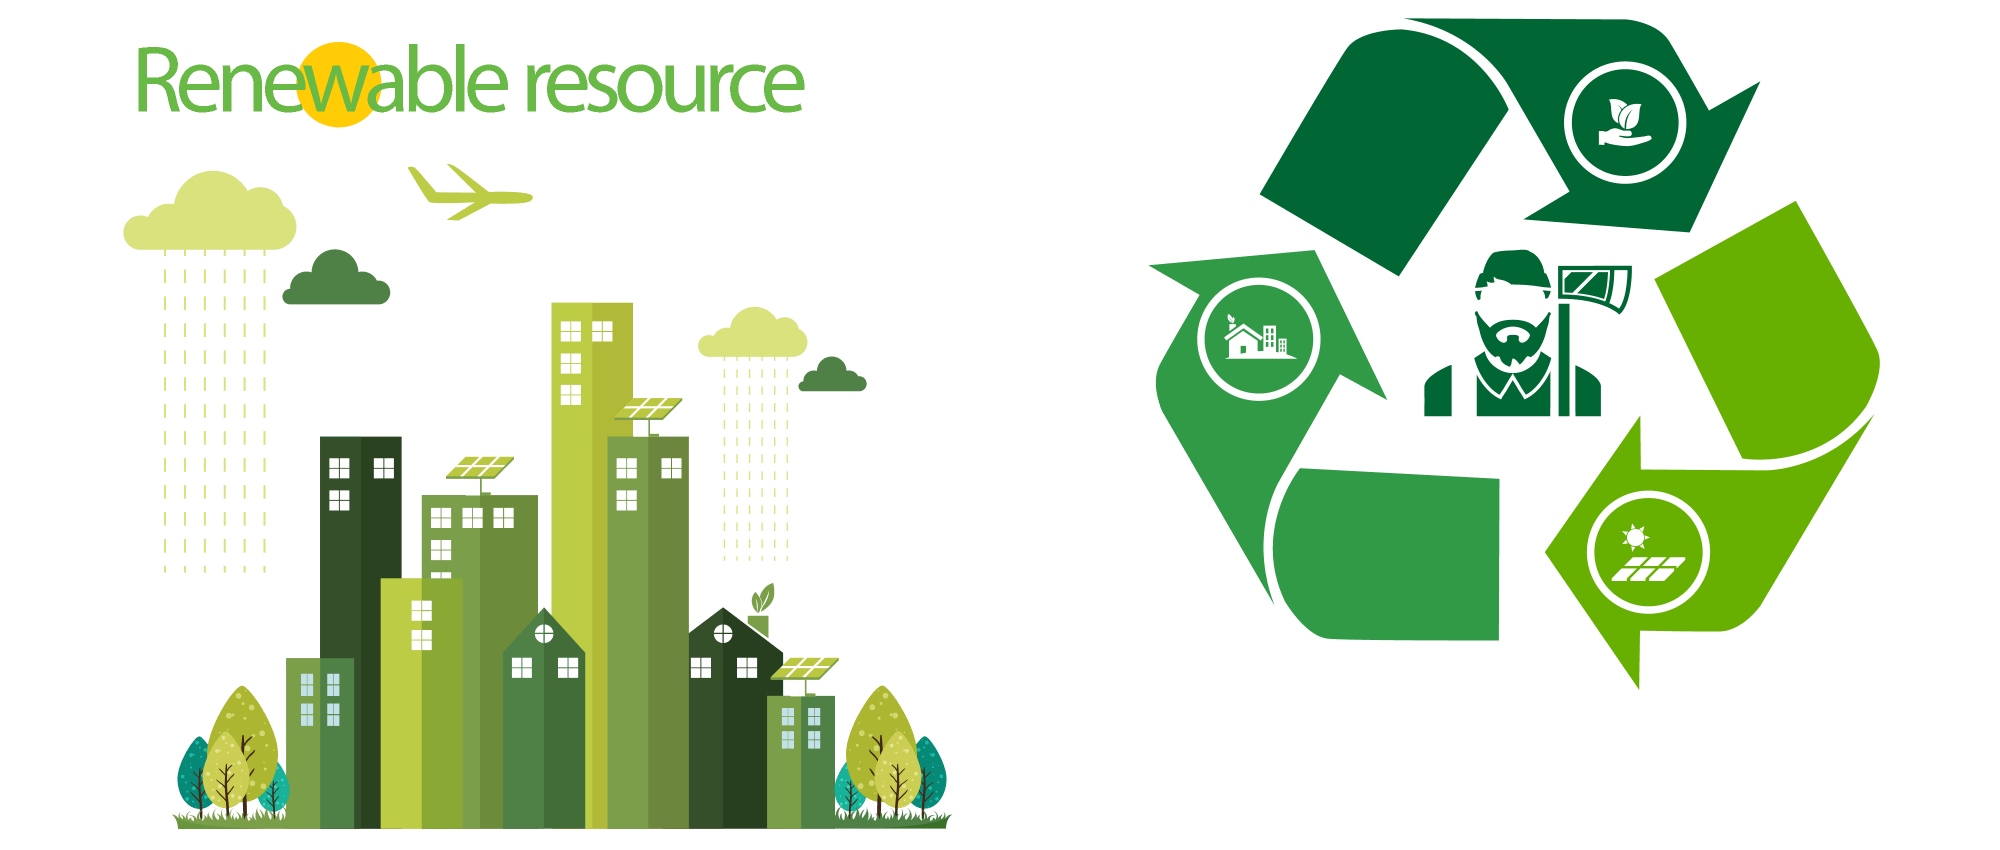 Renewable resource